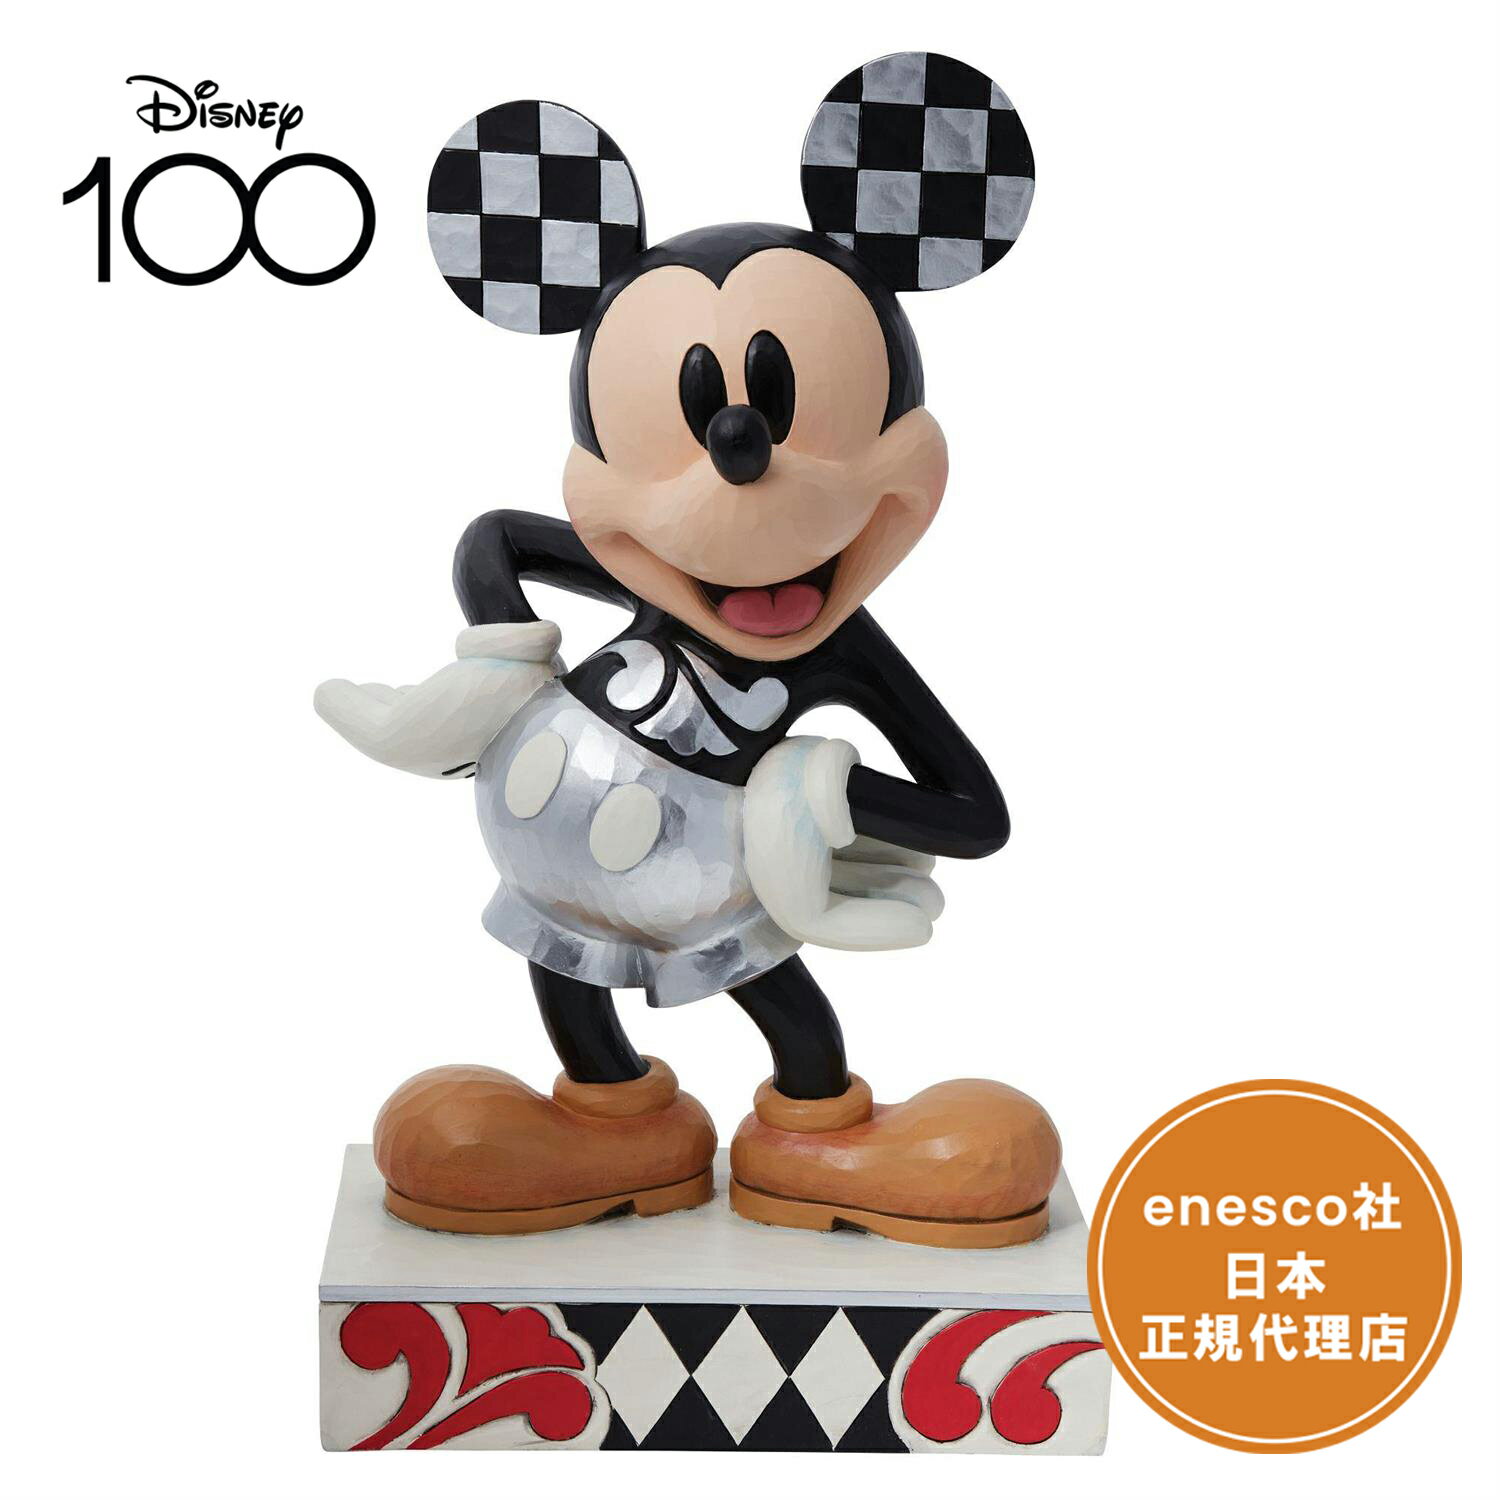 送料無料 ディズニー100周年 ミッキーマウス 45cm ディズニー フィギュア ジムショア D100 Mickey Statue エネスコ 正規代理店